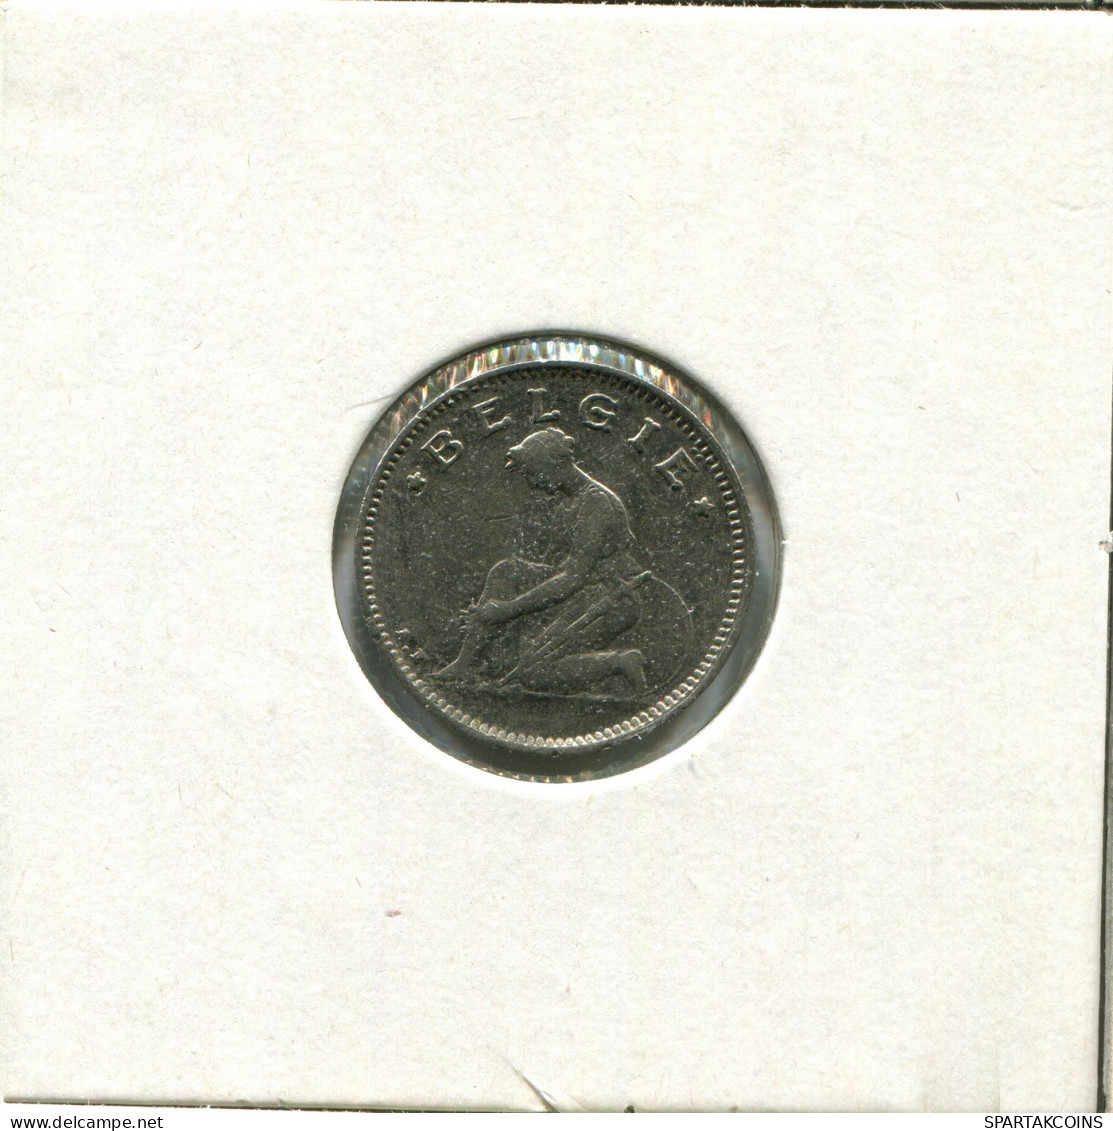 50 CENTIMES 1923 DUTCH Text BELGIUM Coin #AW905.U - 50 Centimes